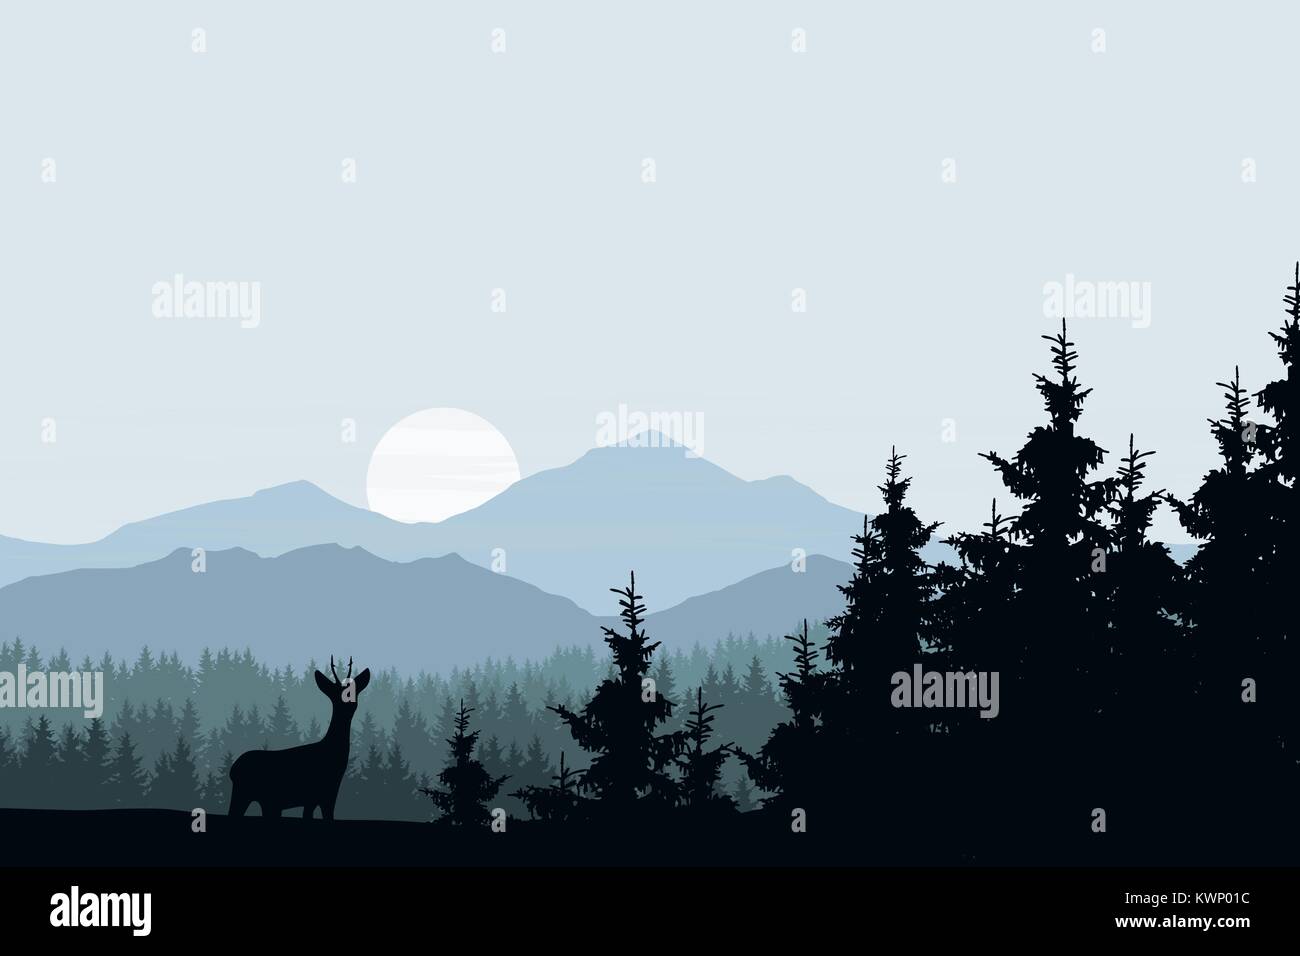 Vector illustration réaliste du paysage de montagne avec des forêts et des cerfs Illustration de Vecteur